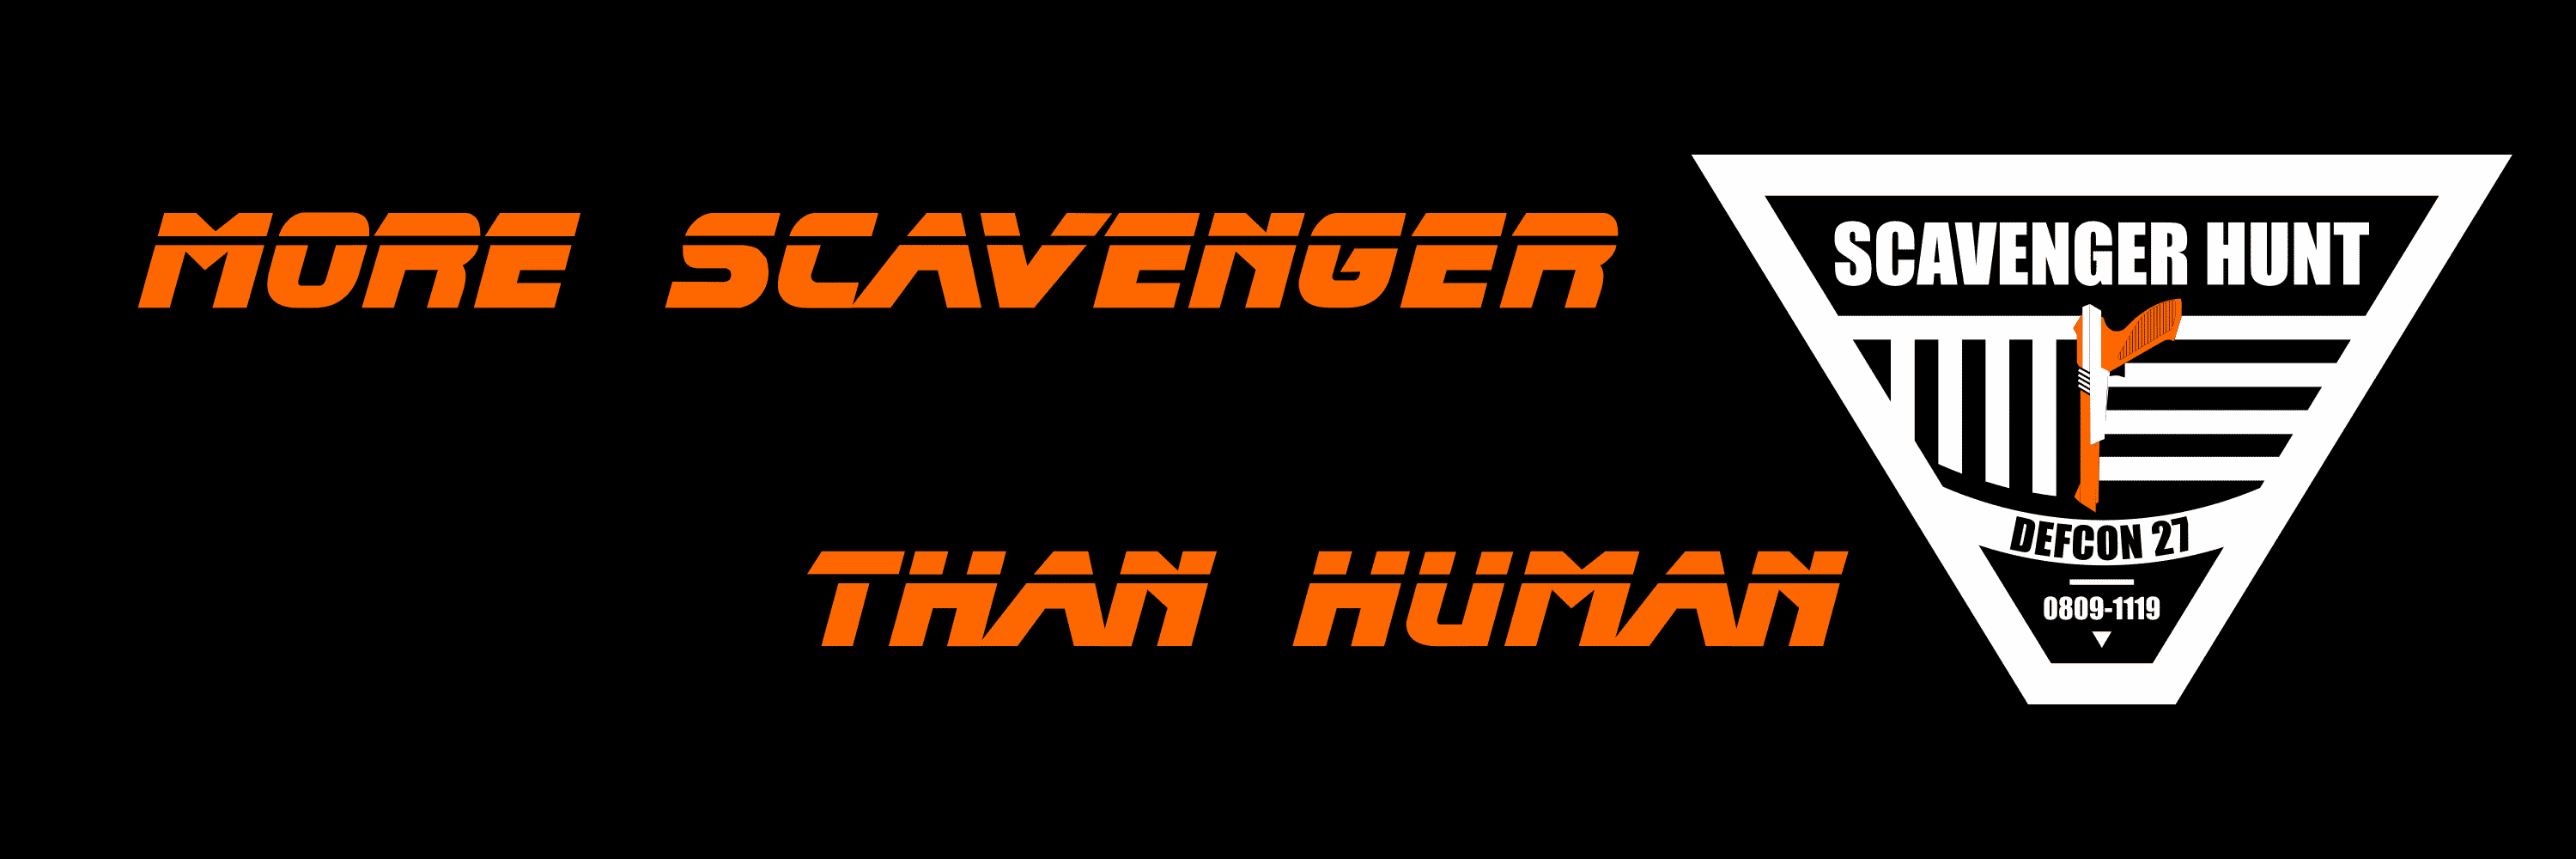 DEF CON 27 Scavenger Hunt tagline and logo